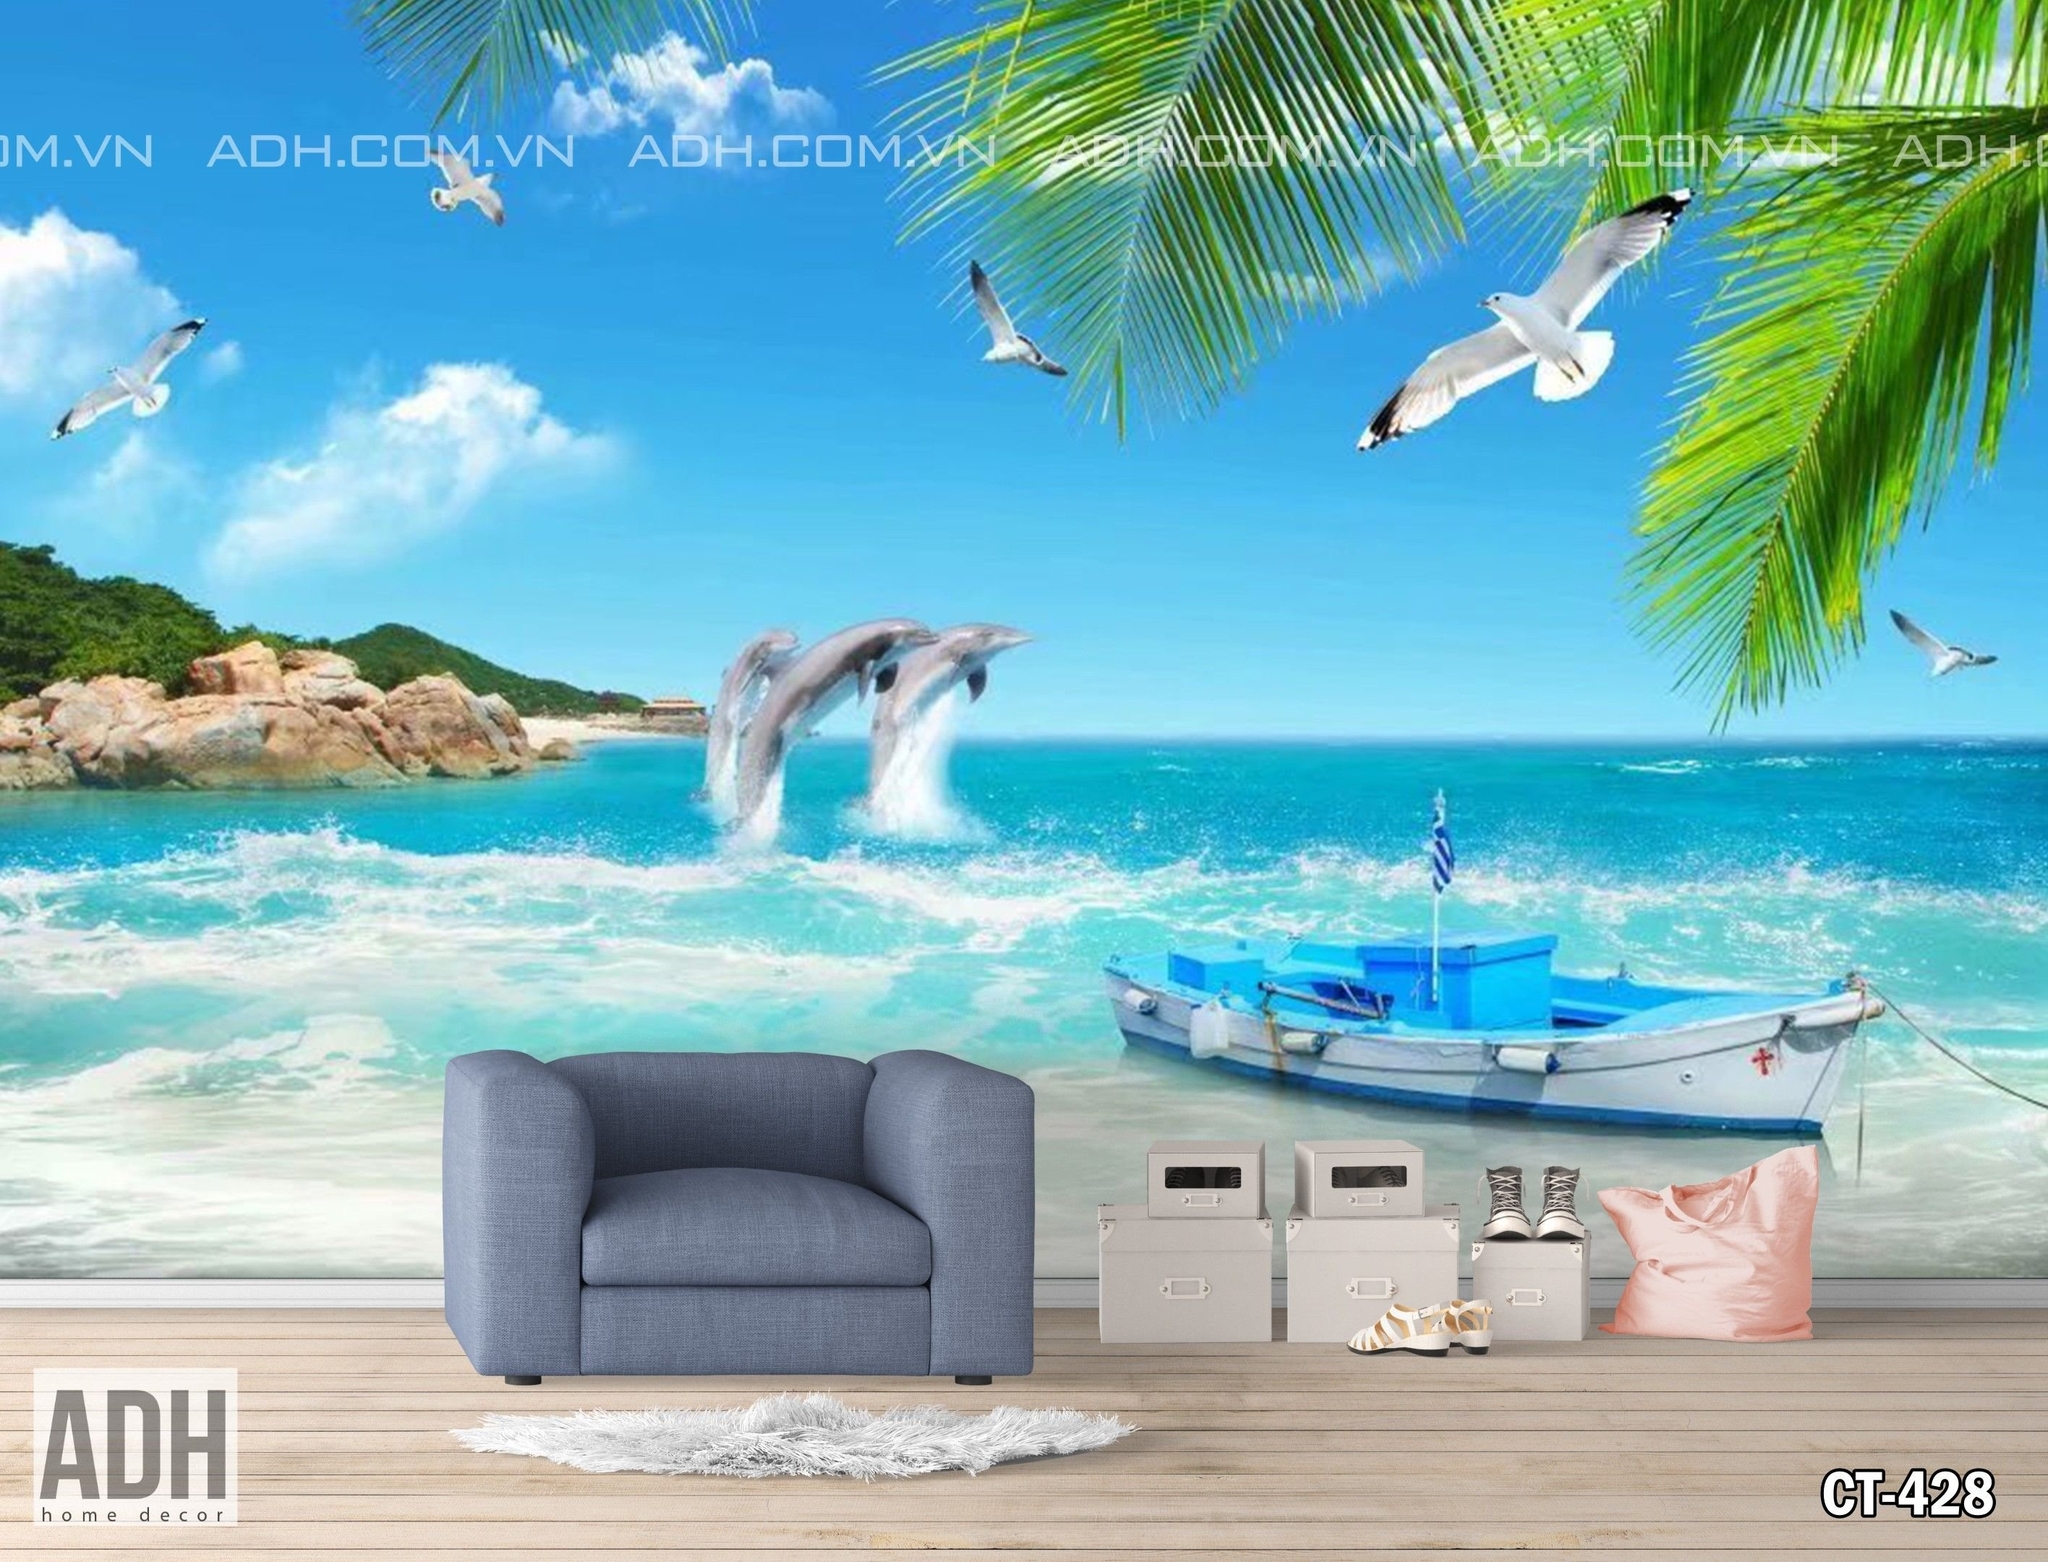 Tranh phong cảnh biển 3D: Biết đâu hôm nay bạn chỉ cần một bức tranh phong cảnh biển 3D để trang trí cho không gian sống thêm sinh động và lung linh. Với phong cách nghệ thuật hiện đại cùng một khung cảnh biển rộng lớn, tranh sẽ mang đến sự trải nghiệm tuyệt vời cho những người yêu thích mô hình 3D.